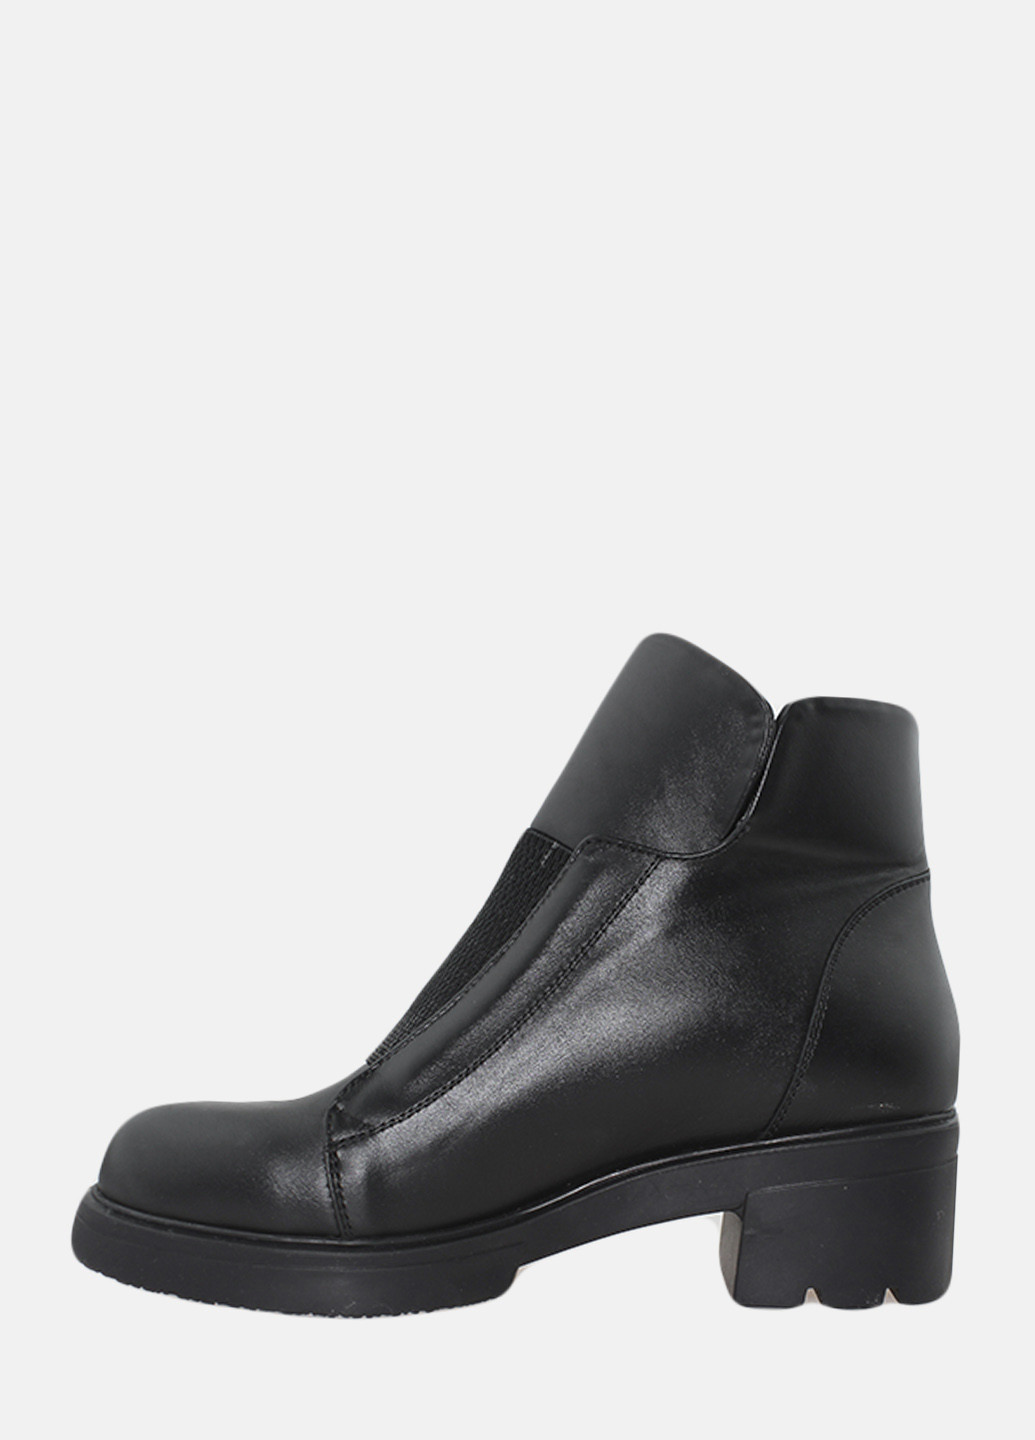 Зимние ботинки rp716-5 черный Passati